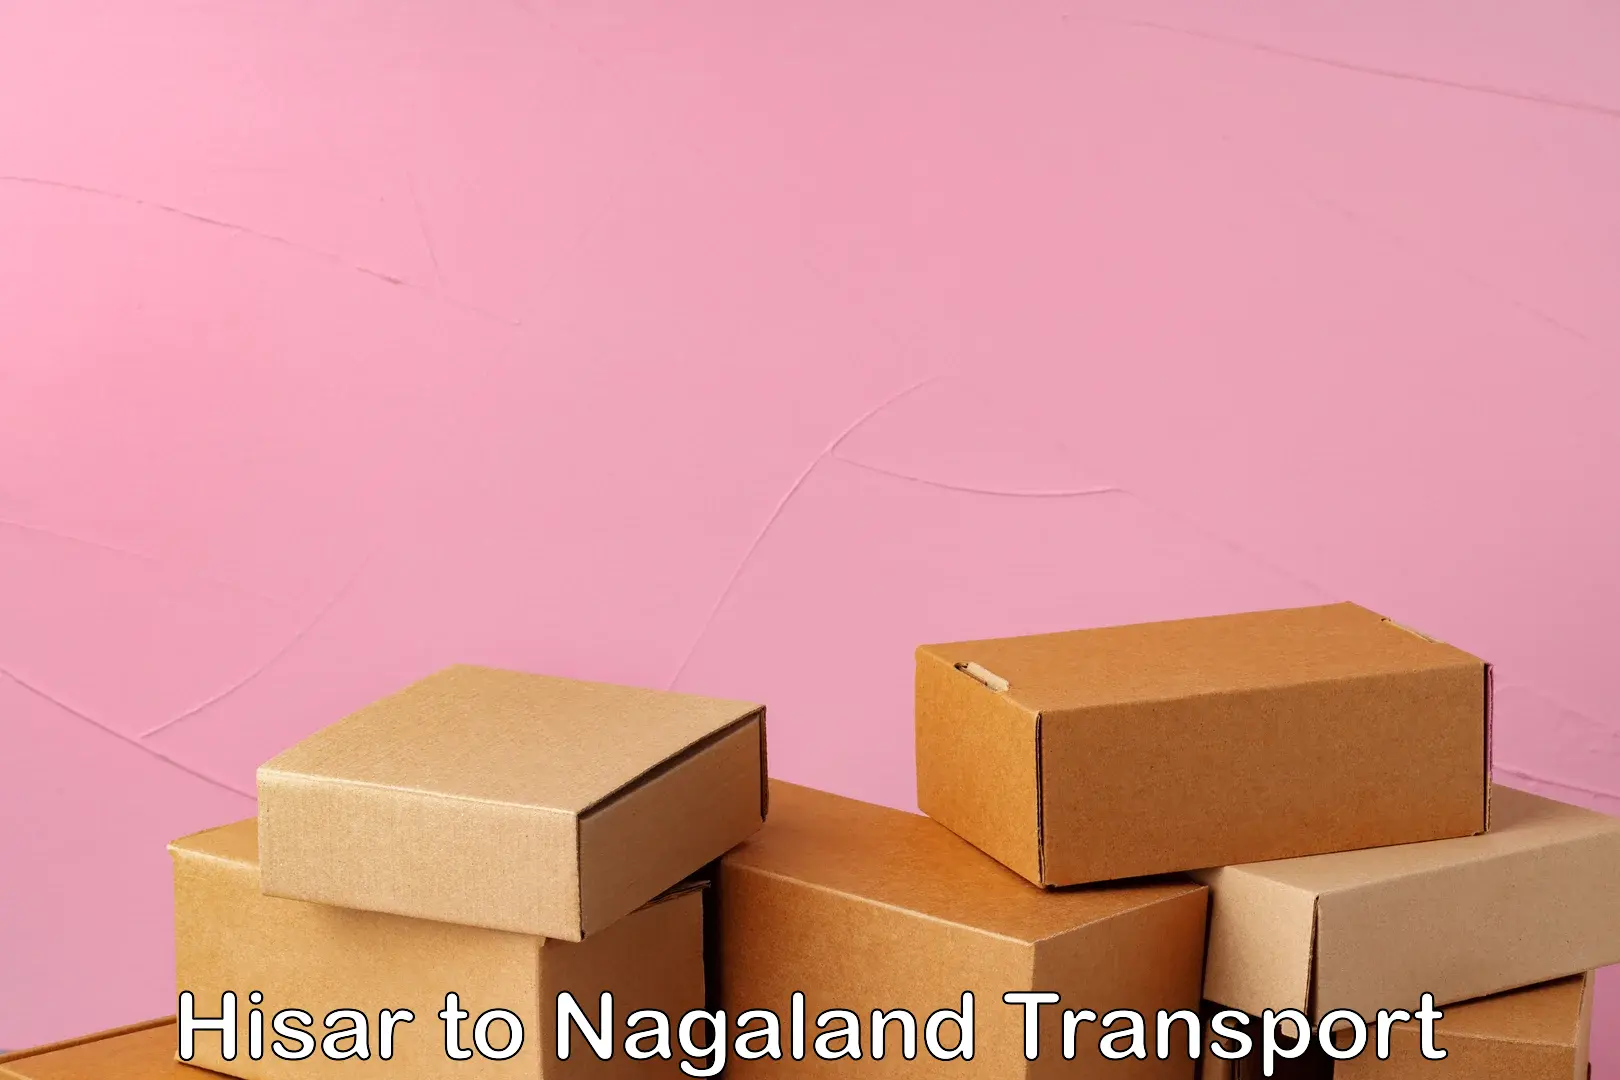 Shipping partner Hisar to Nagaland